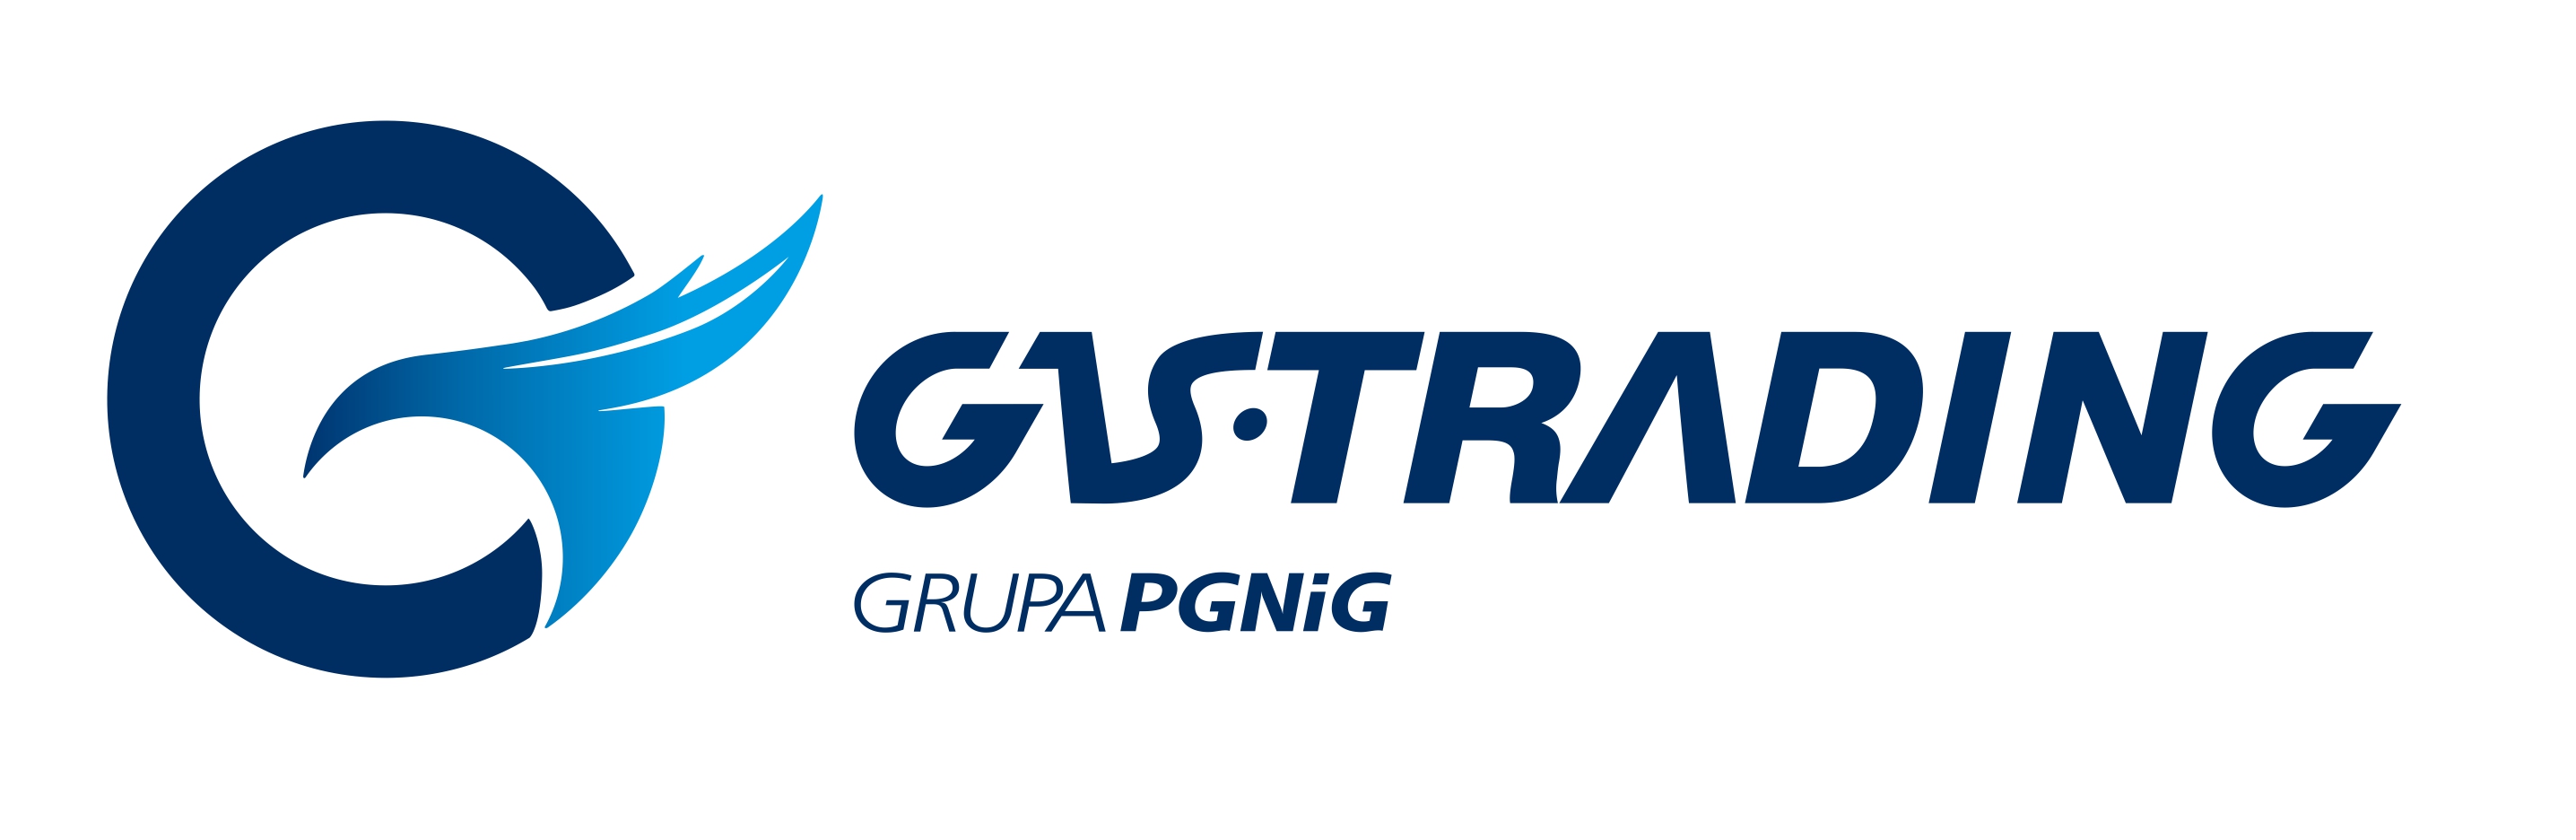 Gas Trading GP logo RGB